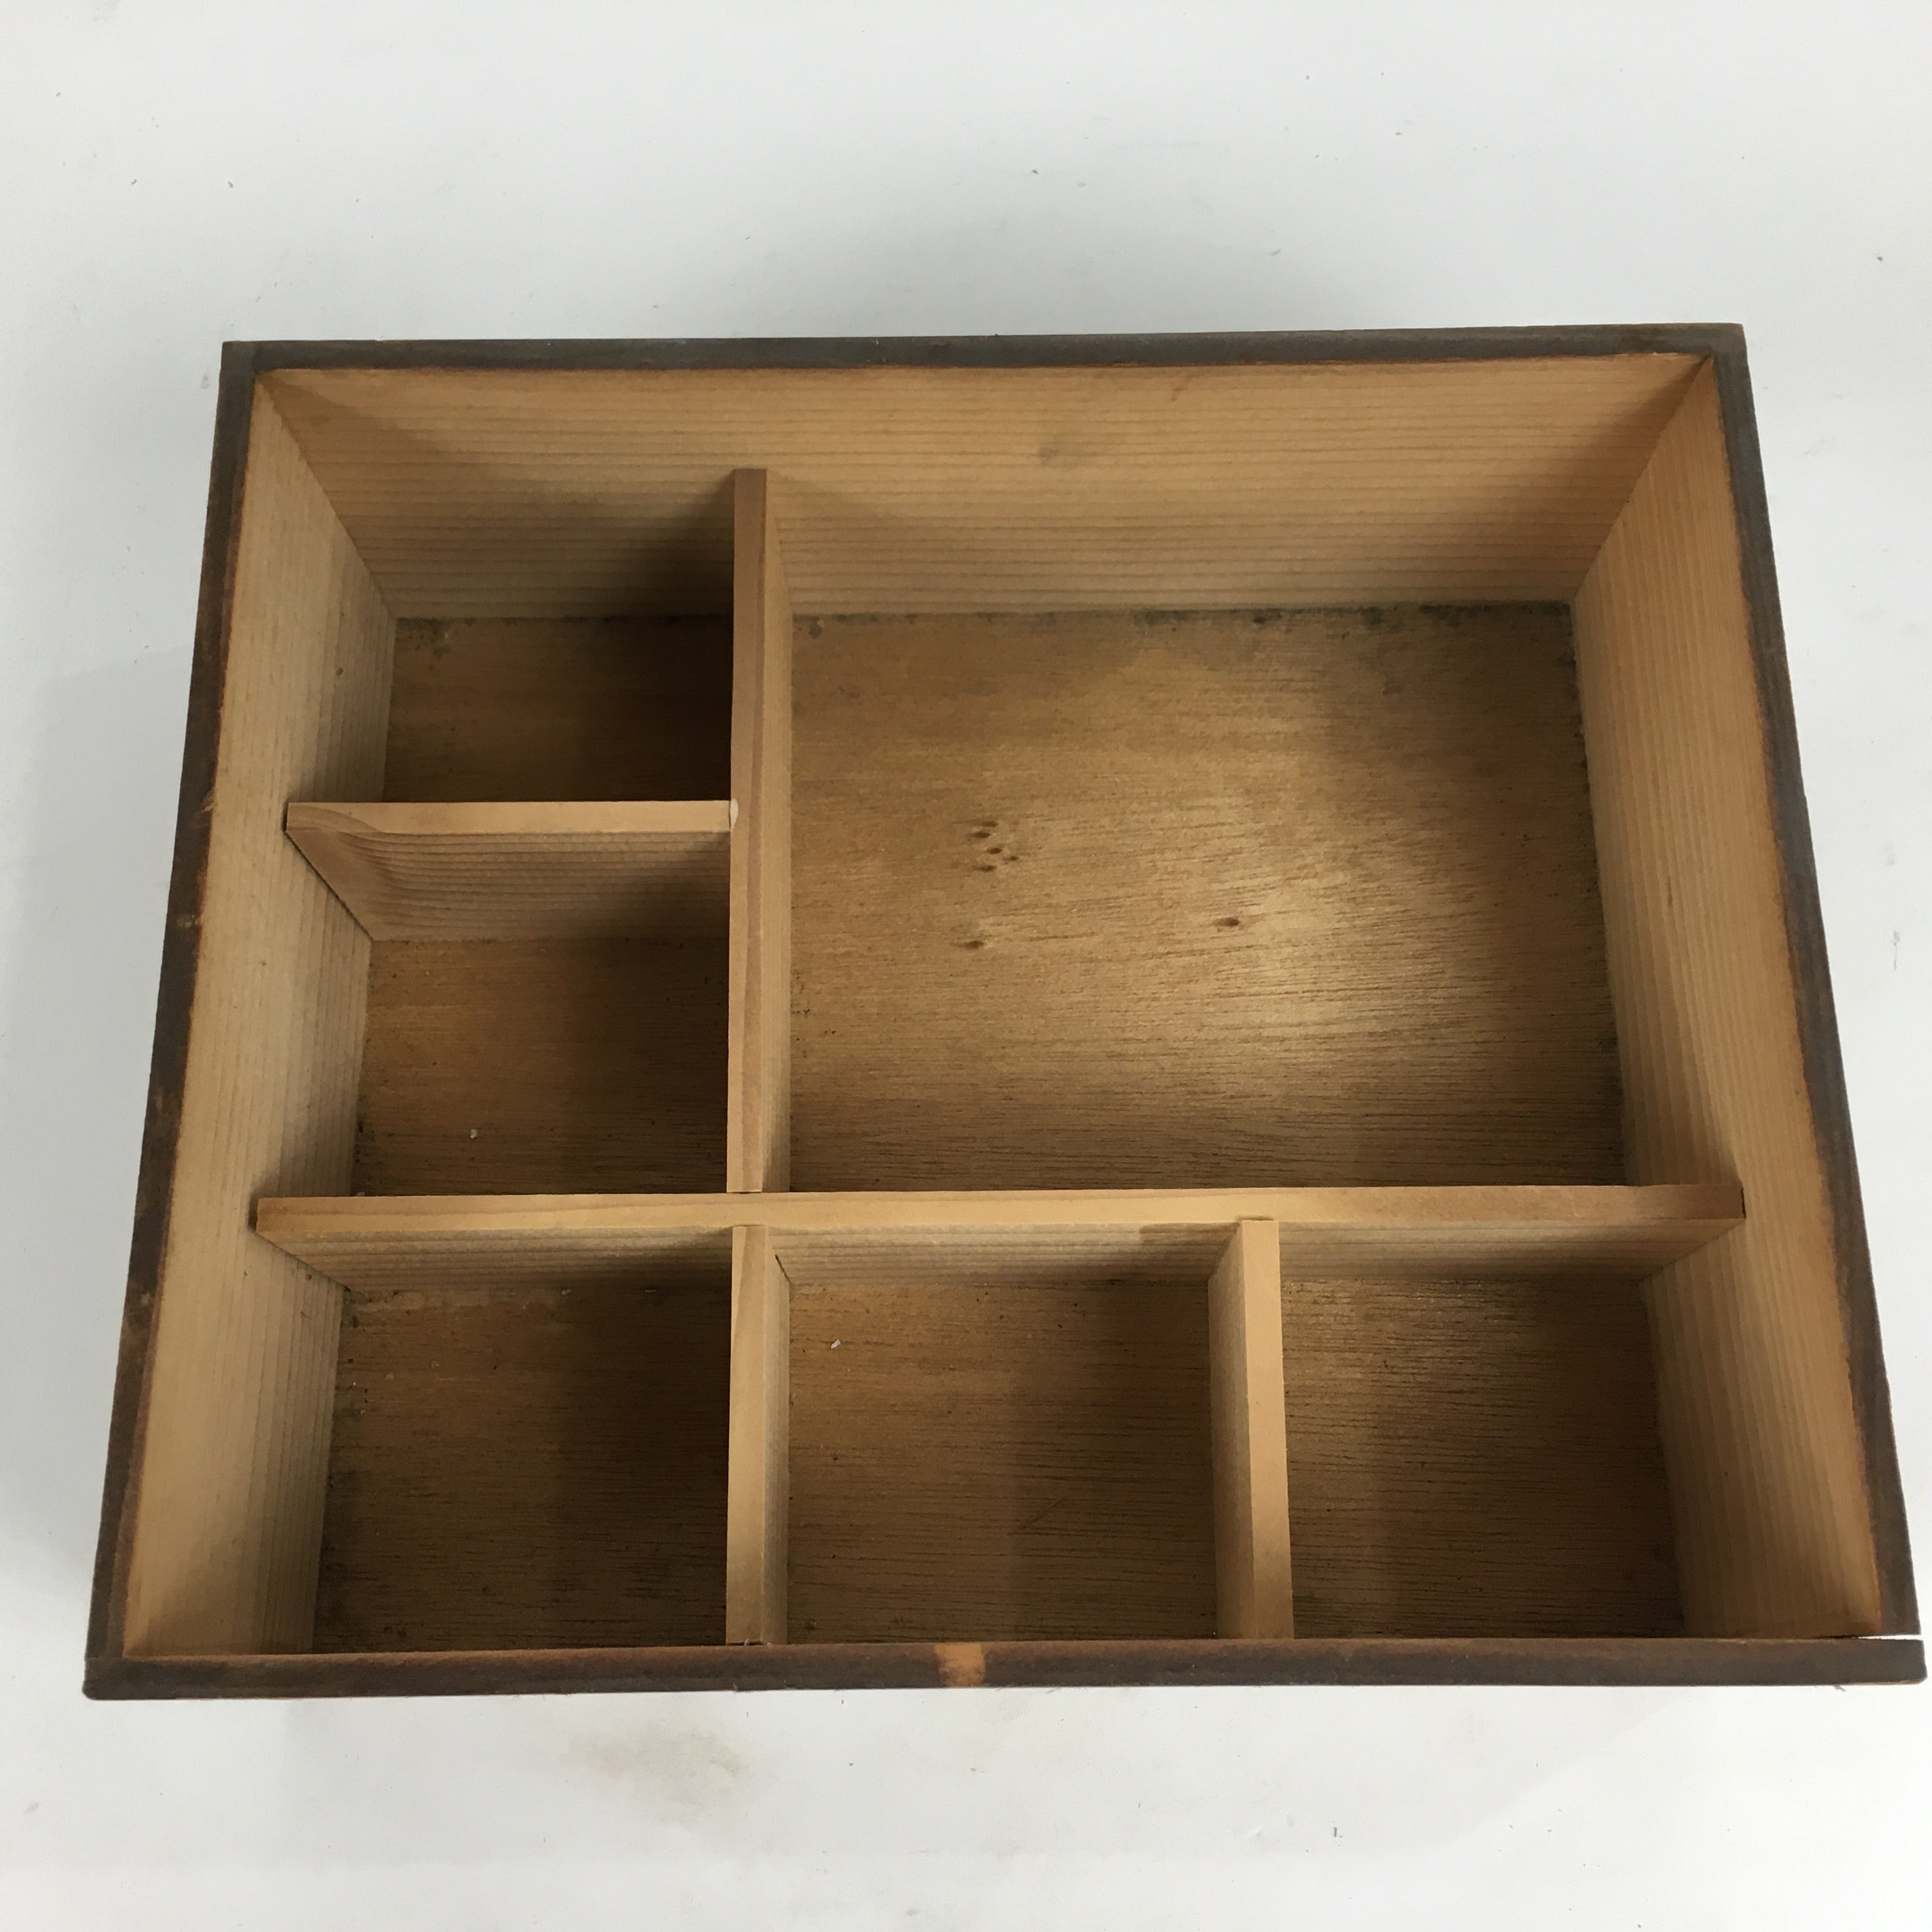 Japanese Wooden Storage Box Vtg Pottery Hako Inside 24.6x20.9x9cm WB906